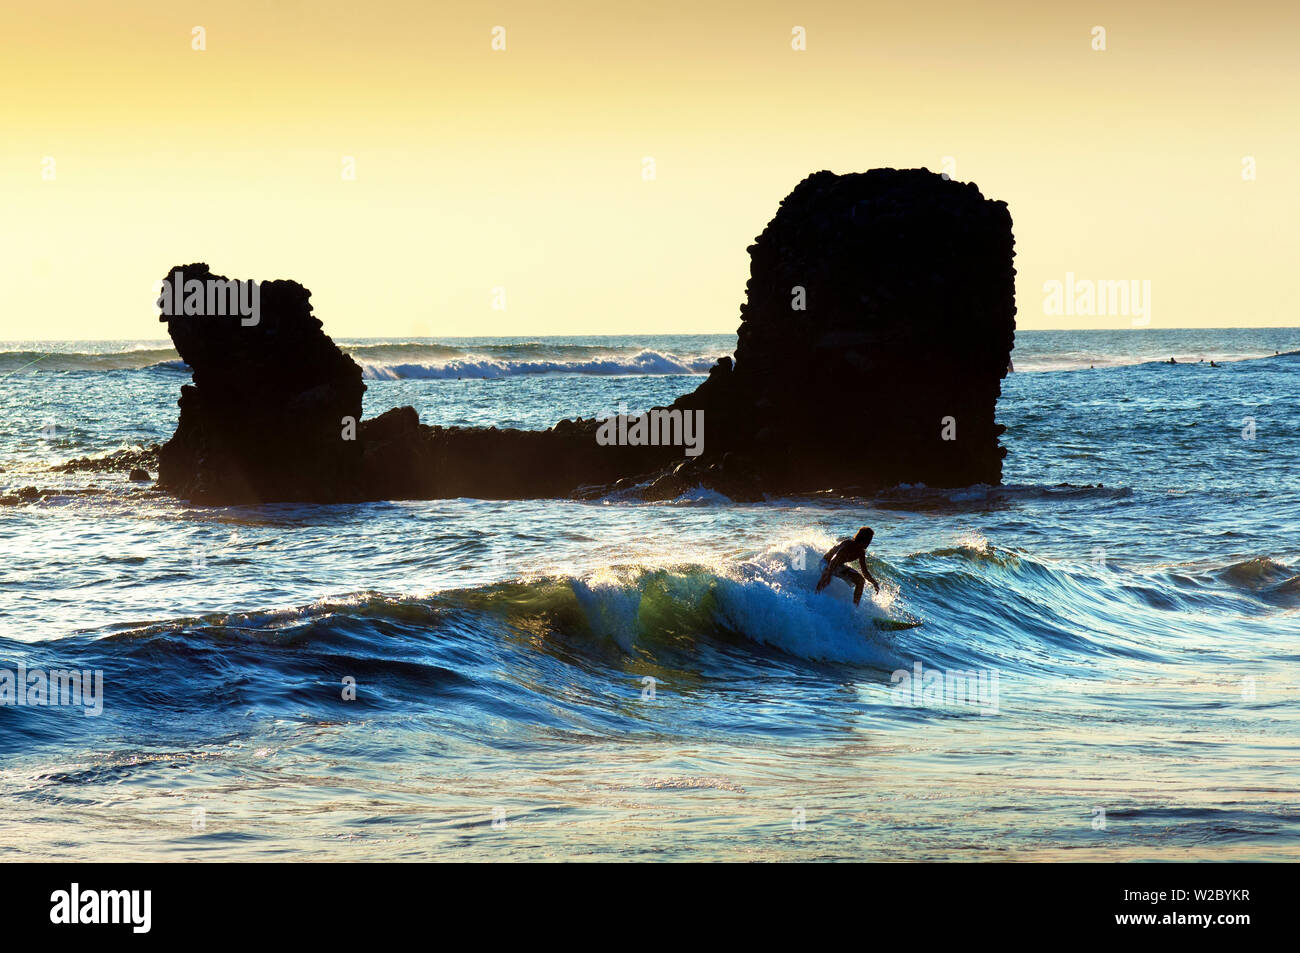 Playa El Tunco, El Salvador, l'océan Pacifique, plage très prisée des surfeurs, des grandes vagues, du nom de la formation rocheuse, Tunco traduit à cochon ou porc, le rocher ressemble à un cochon flottant sur le dos Banque D'Images